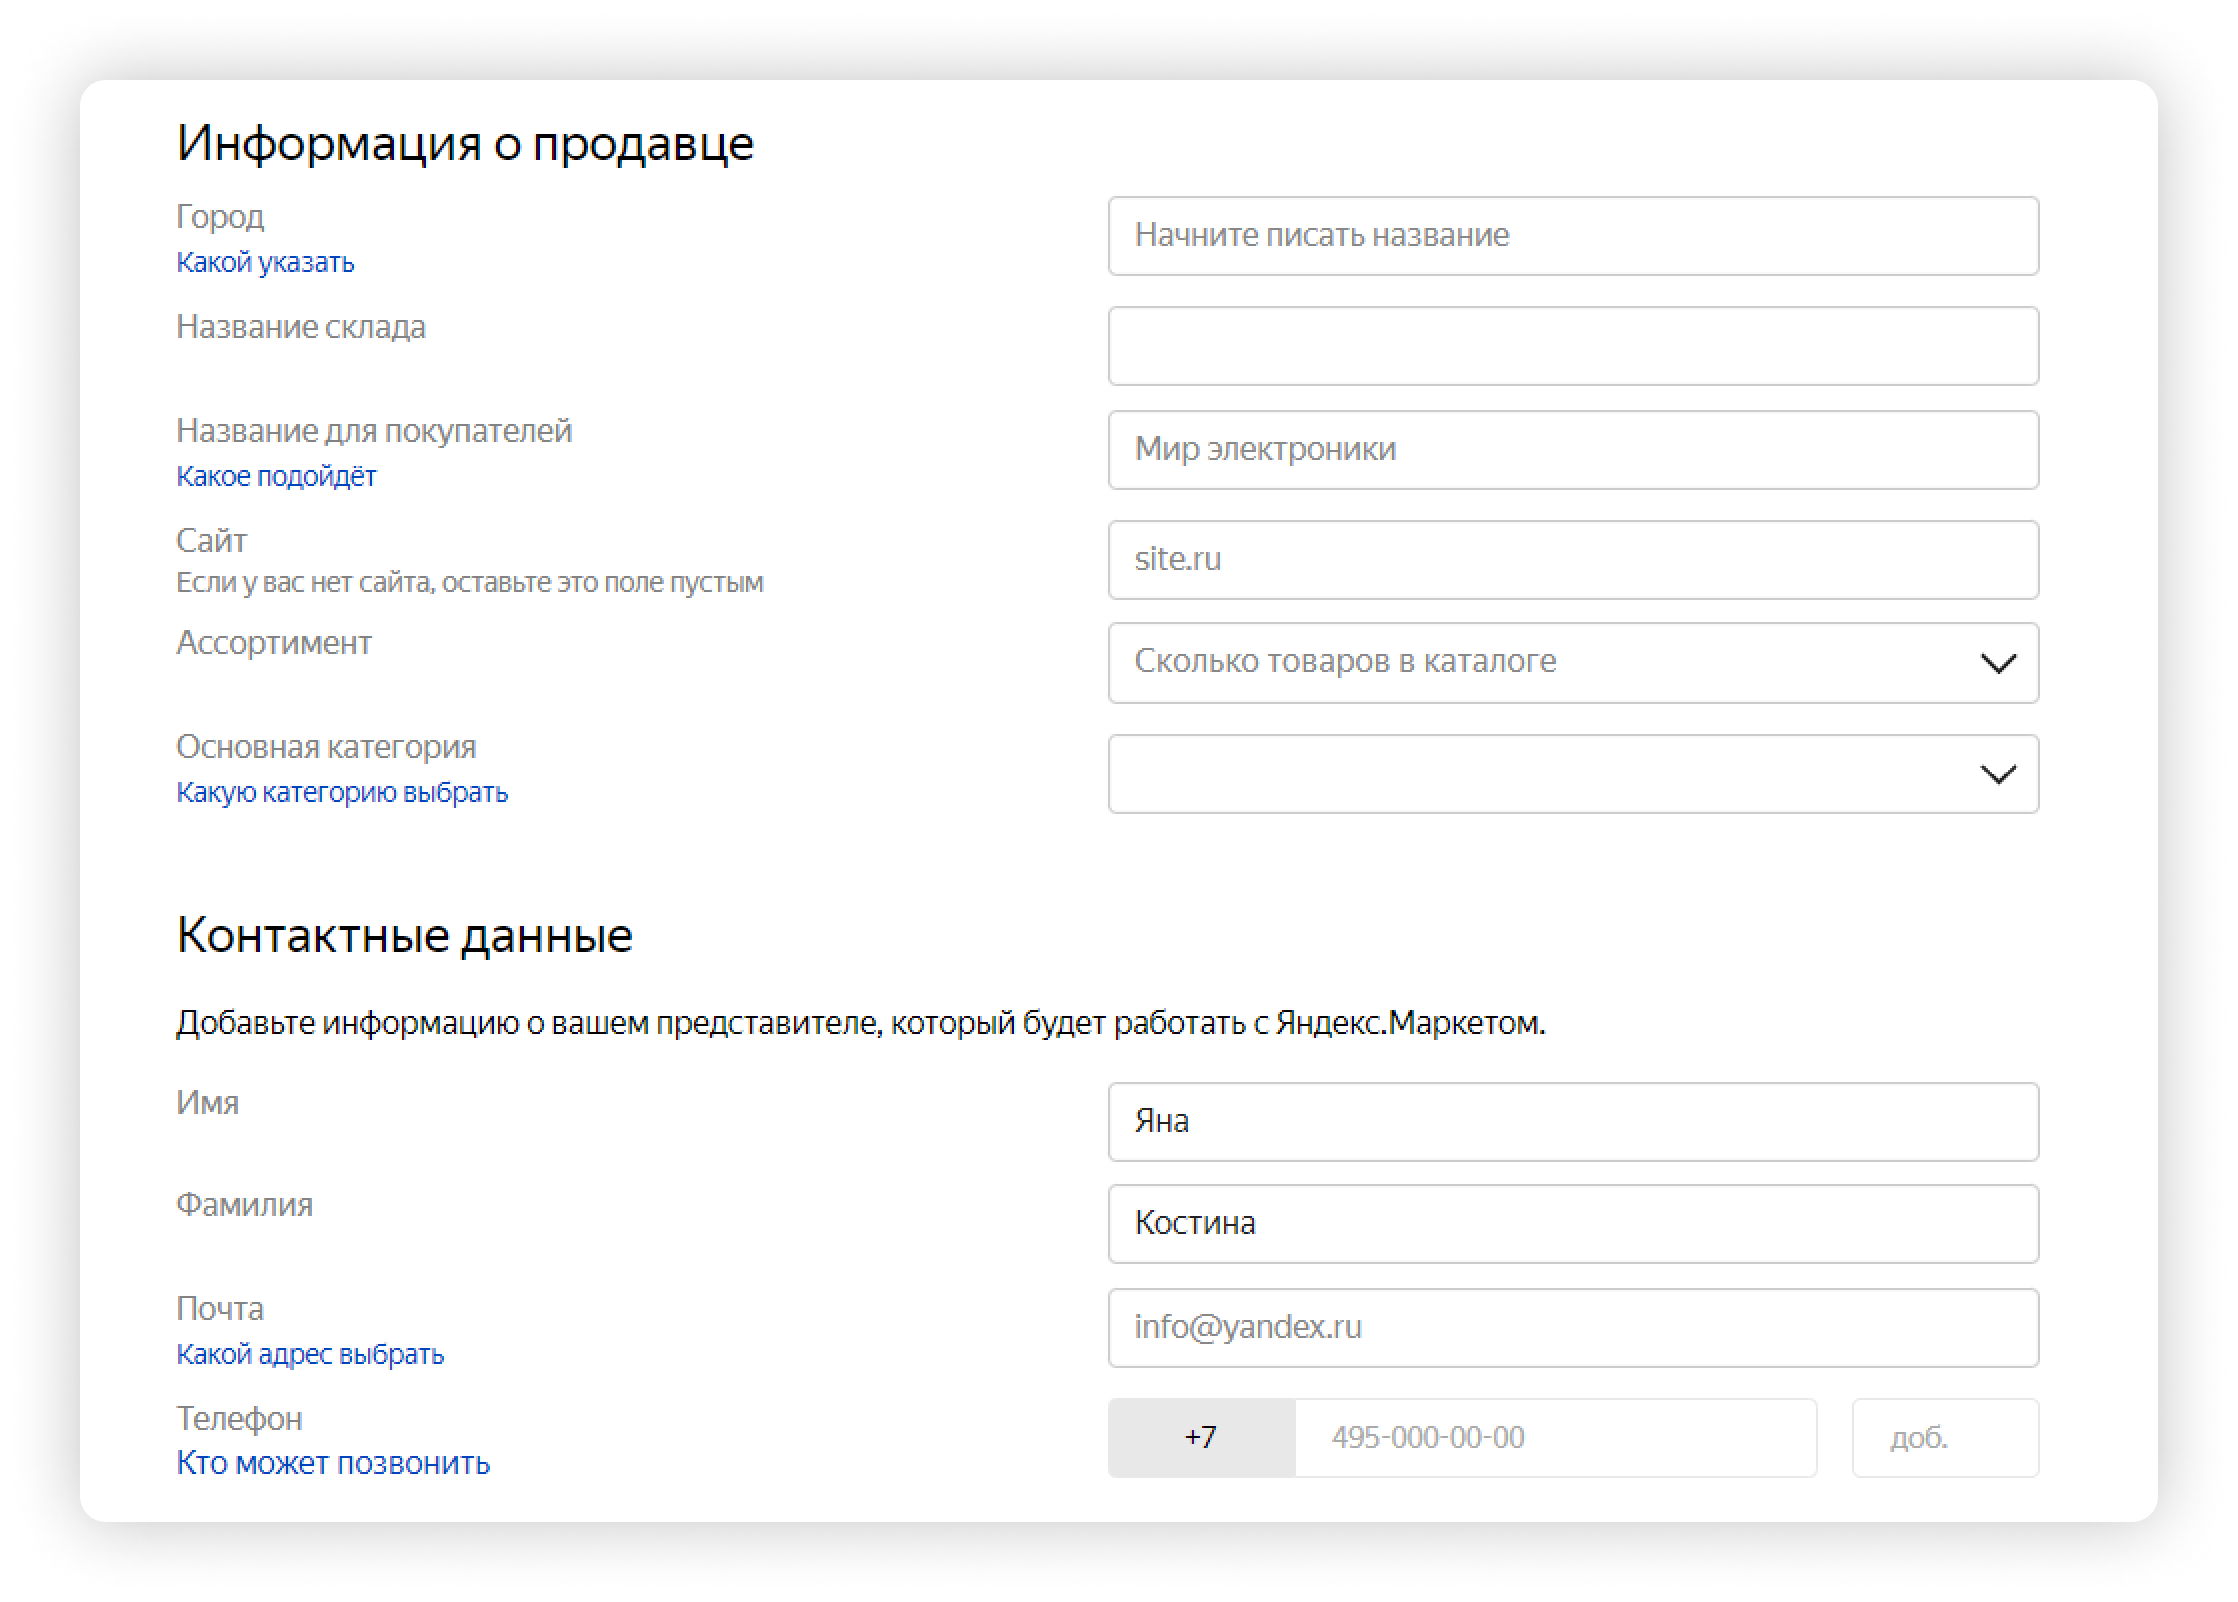 Информация о компании на Яндекс.Маркете